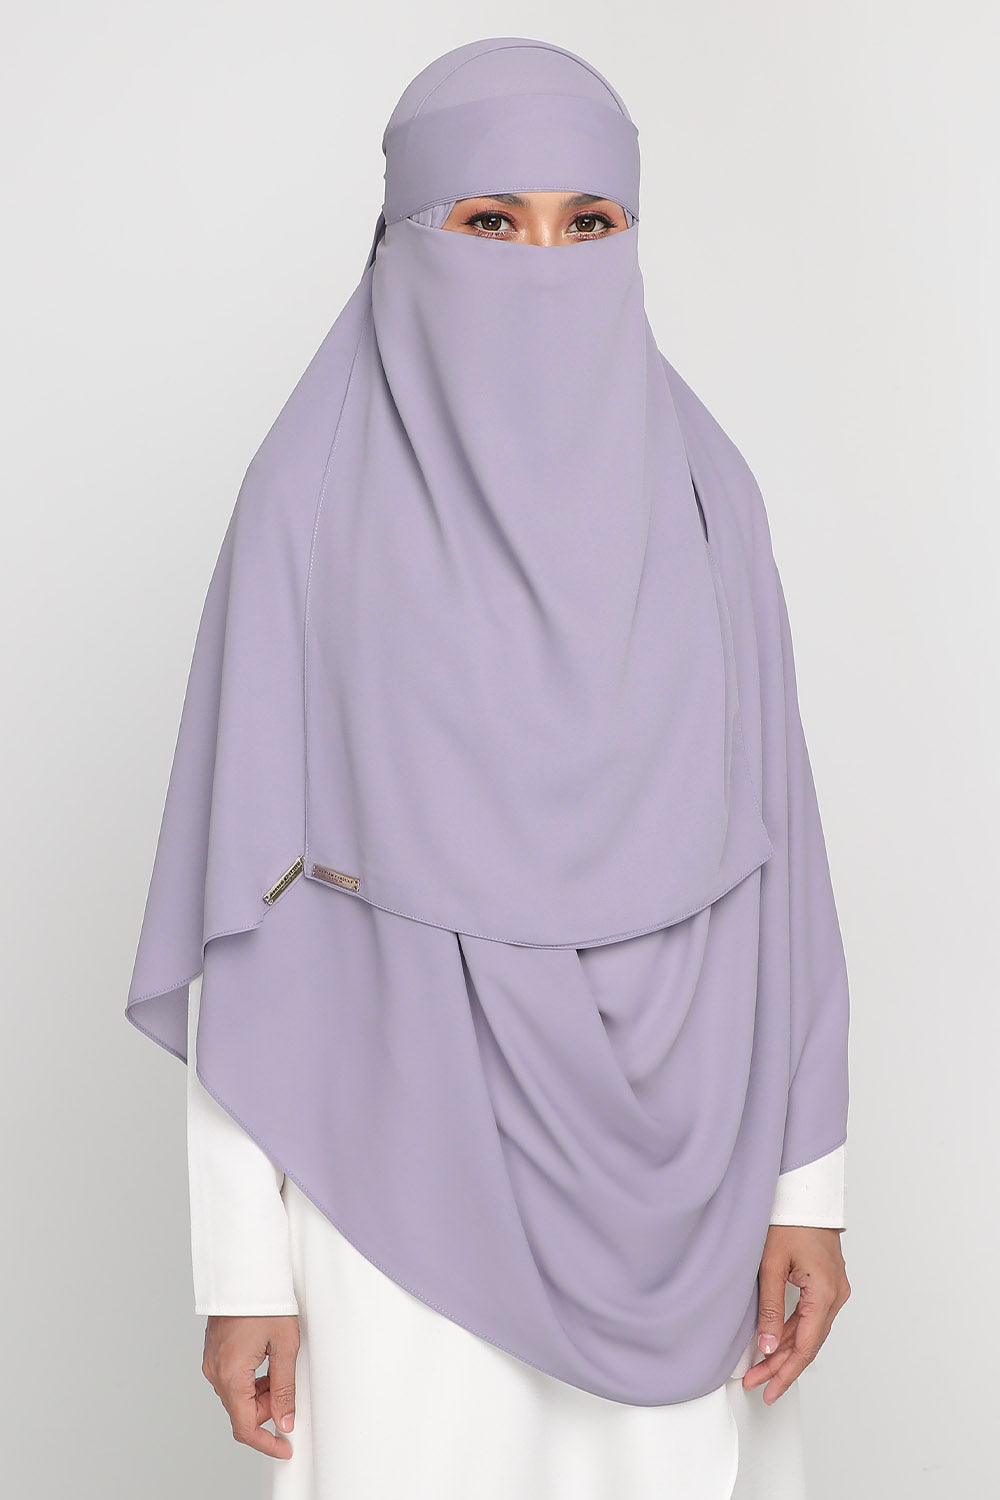 As-Is Niqab Kimono Iris